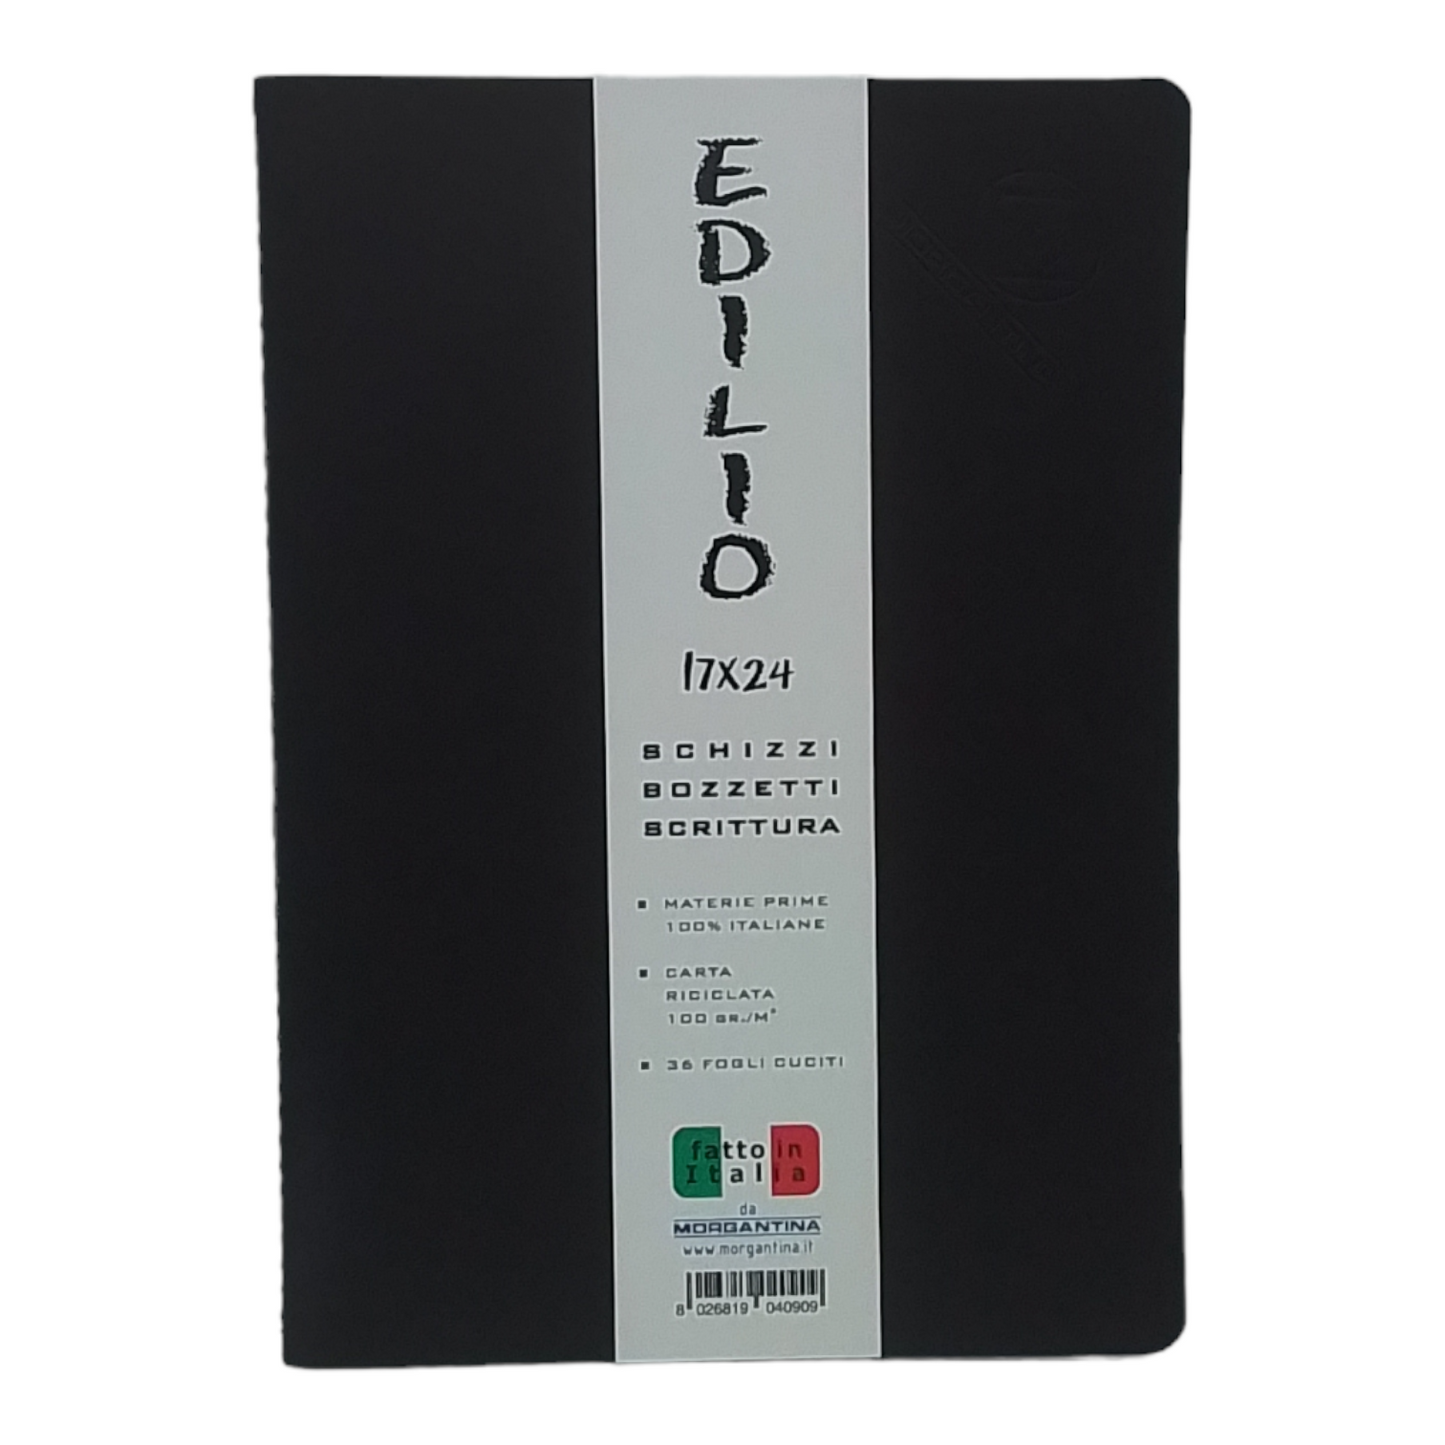 EDILIO - Quaderno per schizzi, bozzetti e scrittura